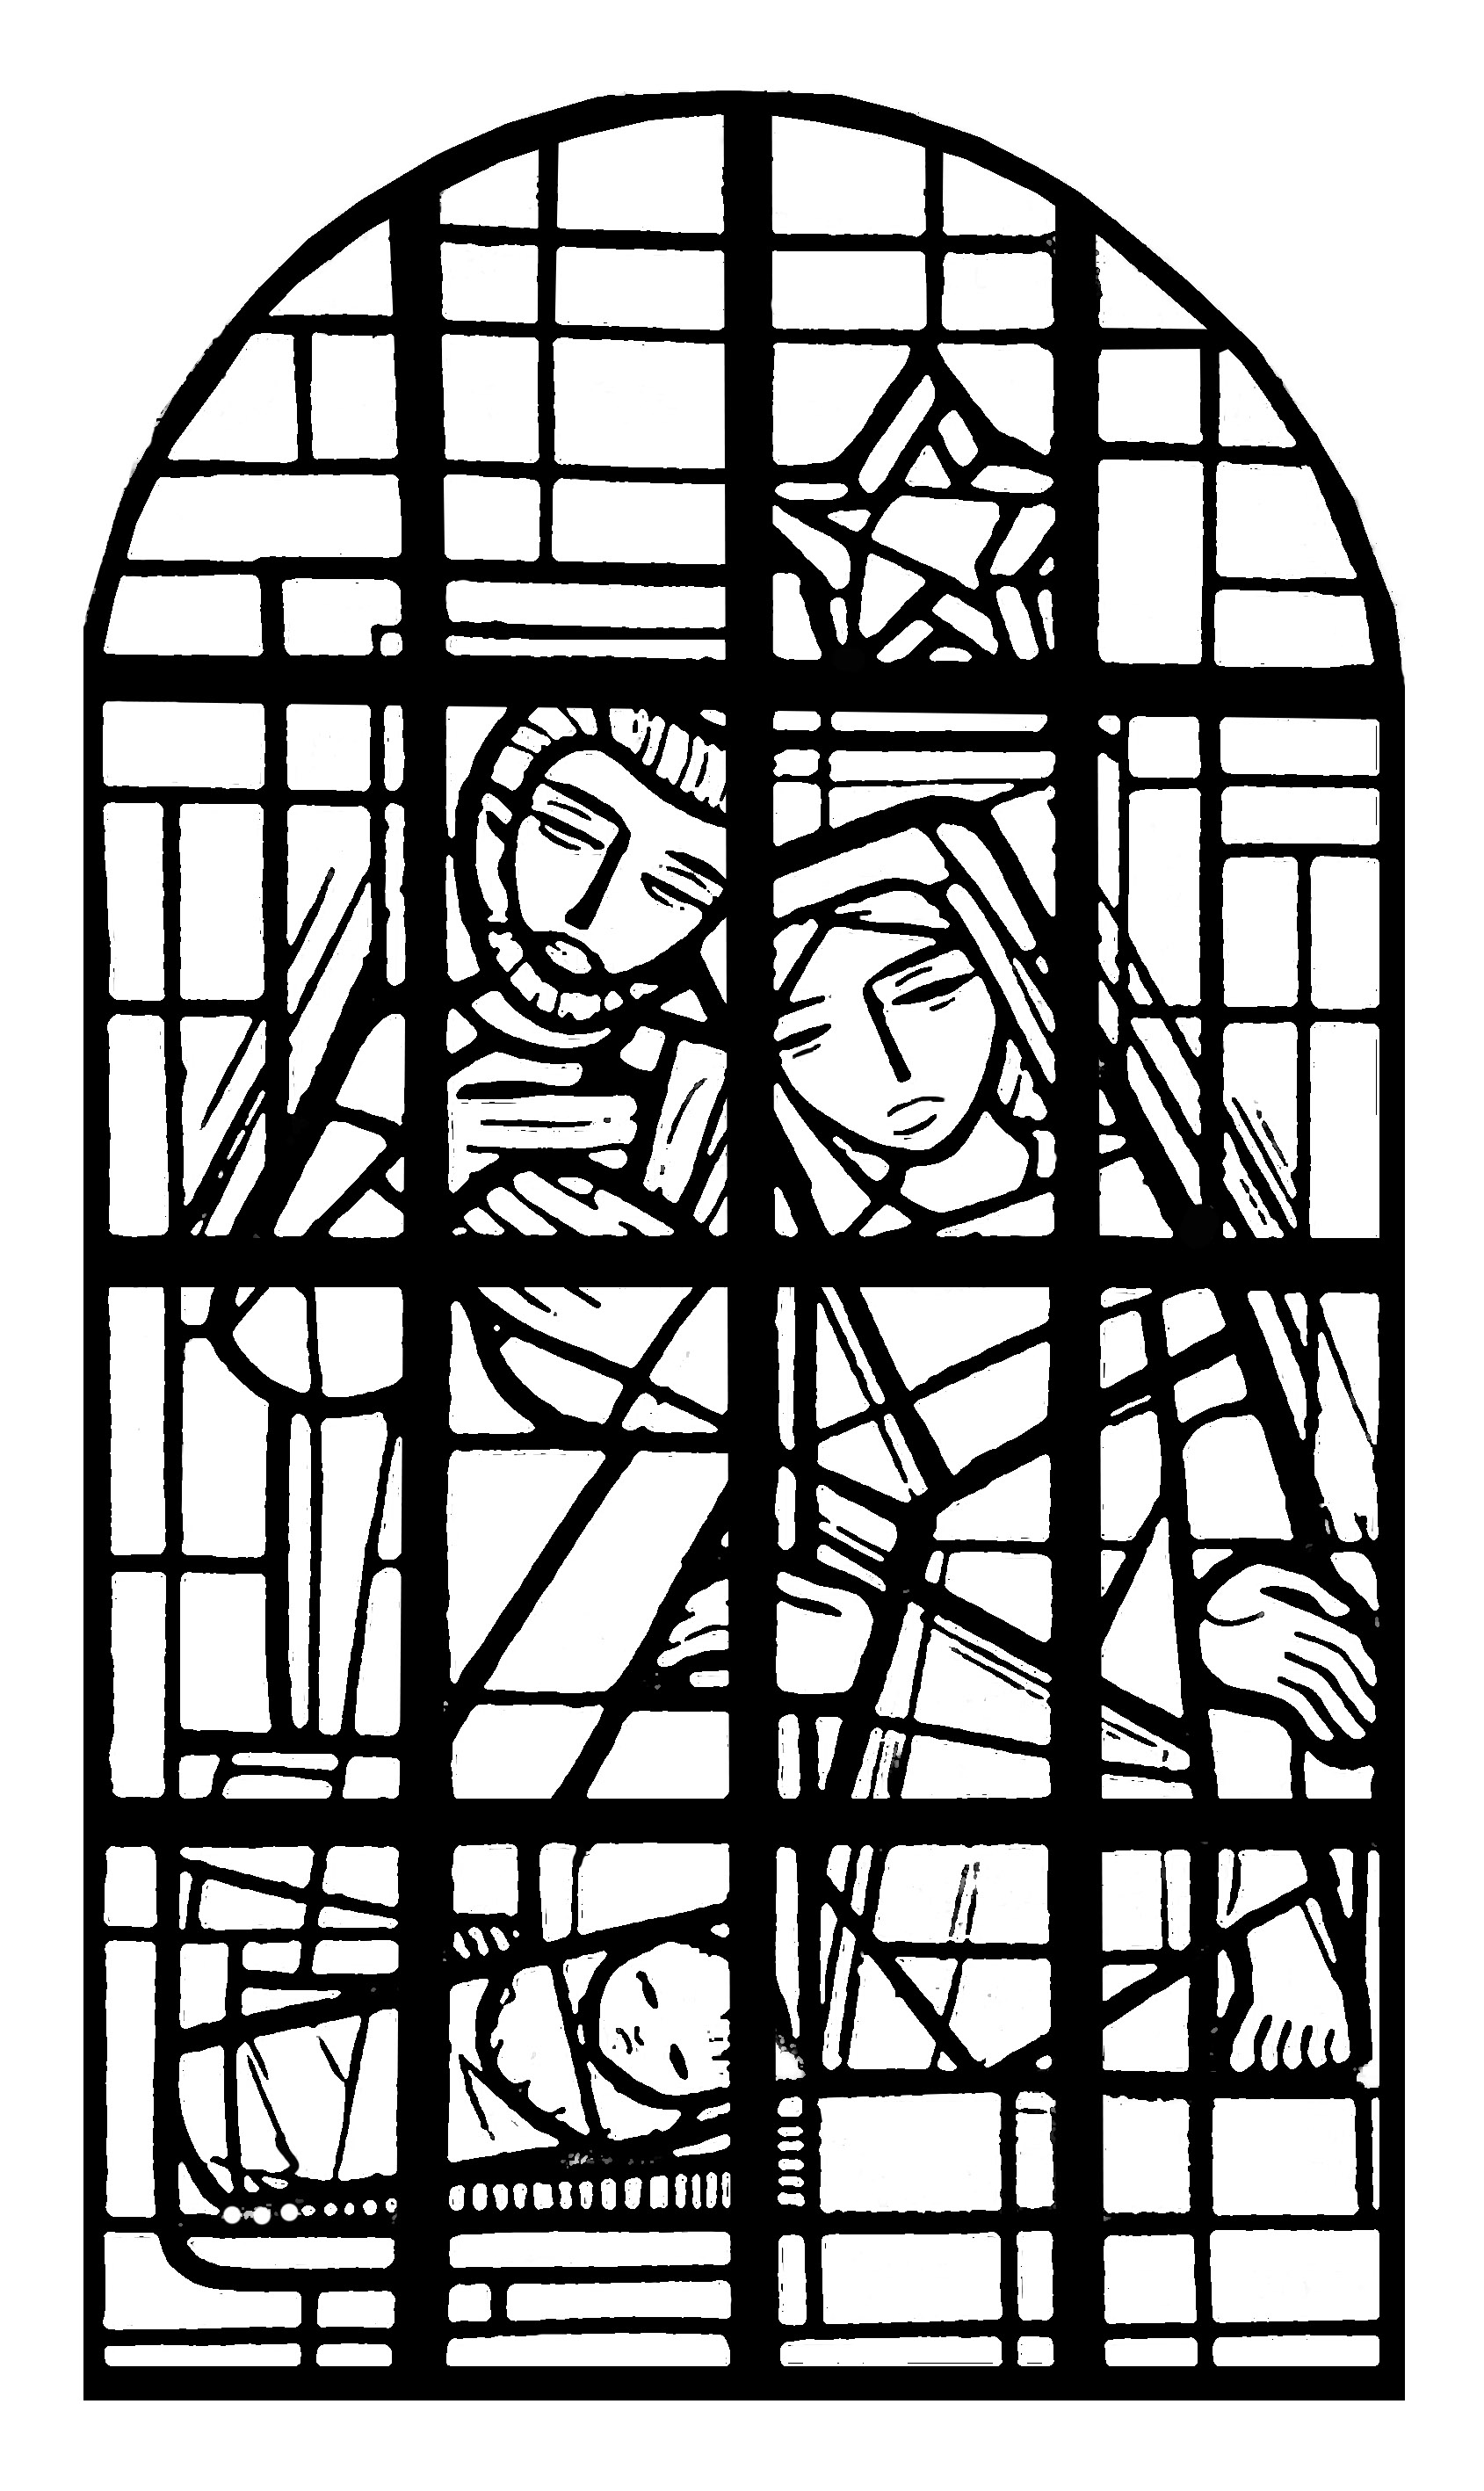 Página para colorear para adultos : Vidriera de la nave de una iglesia en Bélgica : 'Immaculée conception, en Mangombroux (Verviers, Bélgica)'